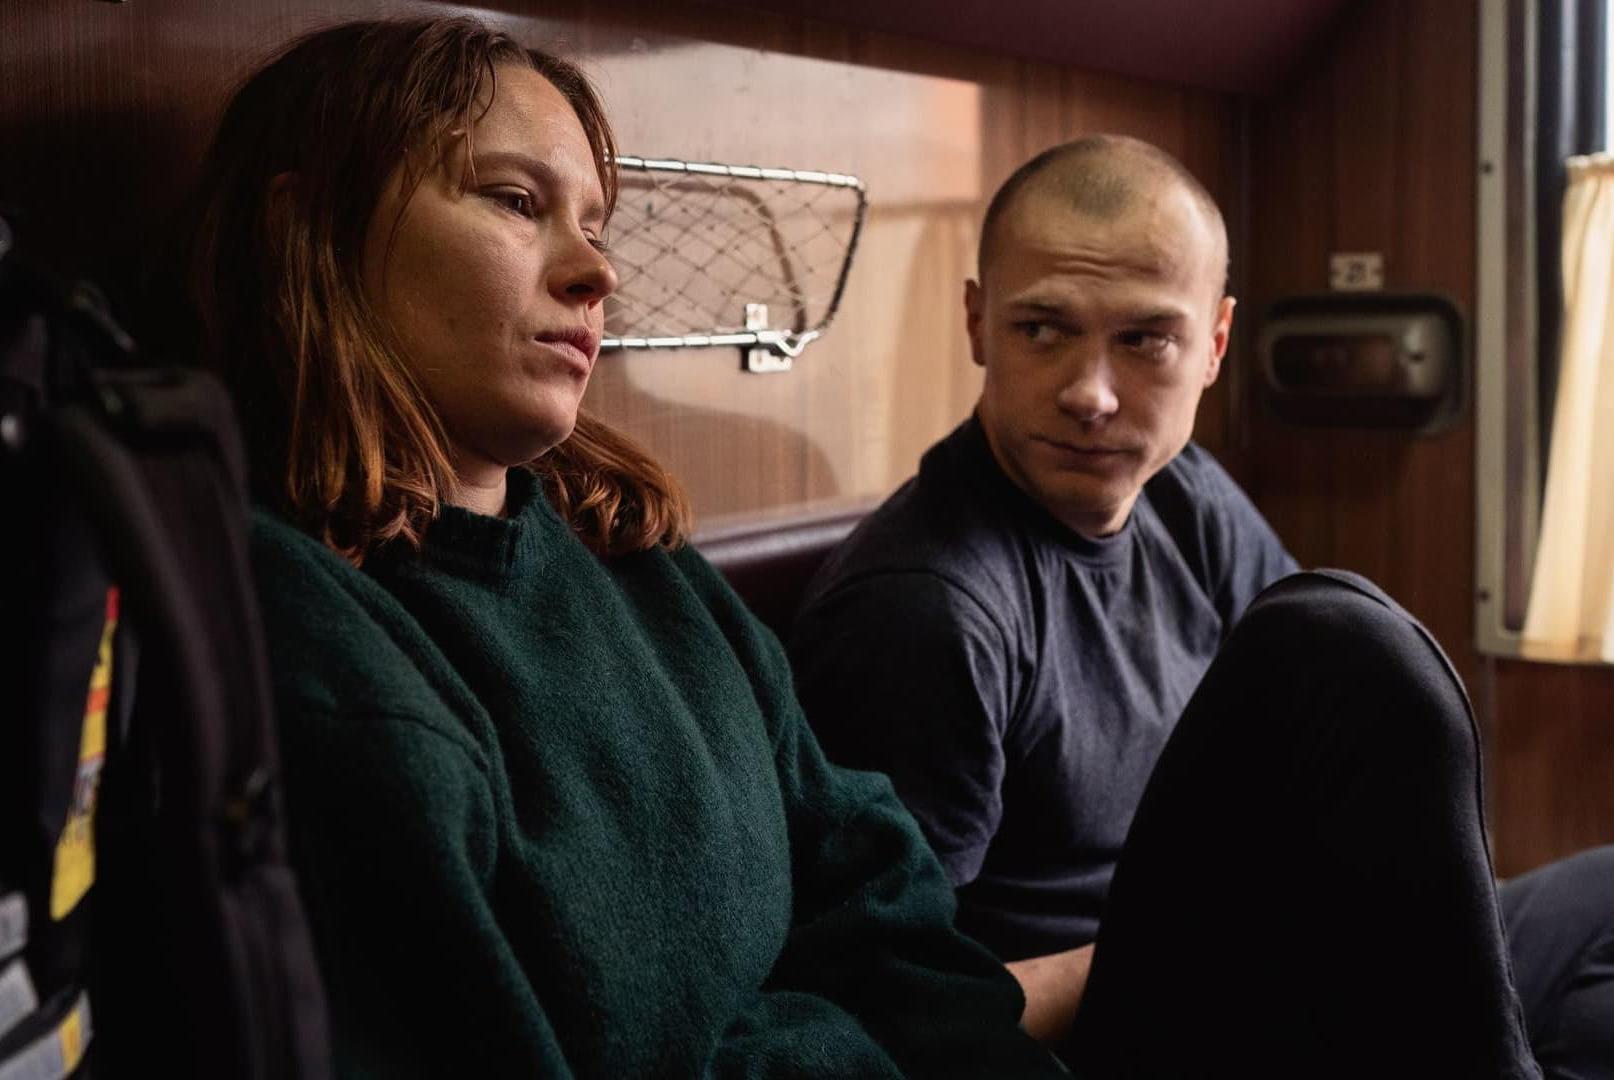 Elokuvan pääosia näyttelevät Seidi Haarla ja Juri Borisov. 12+. Kuva: Festival de Cannes